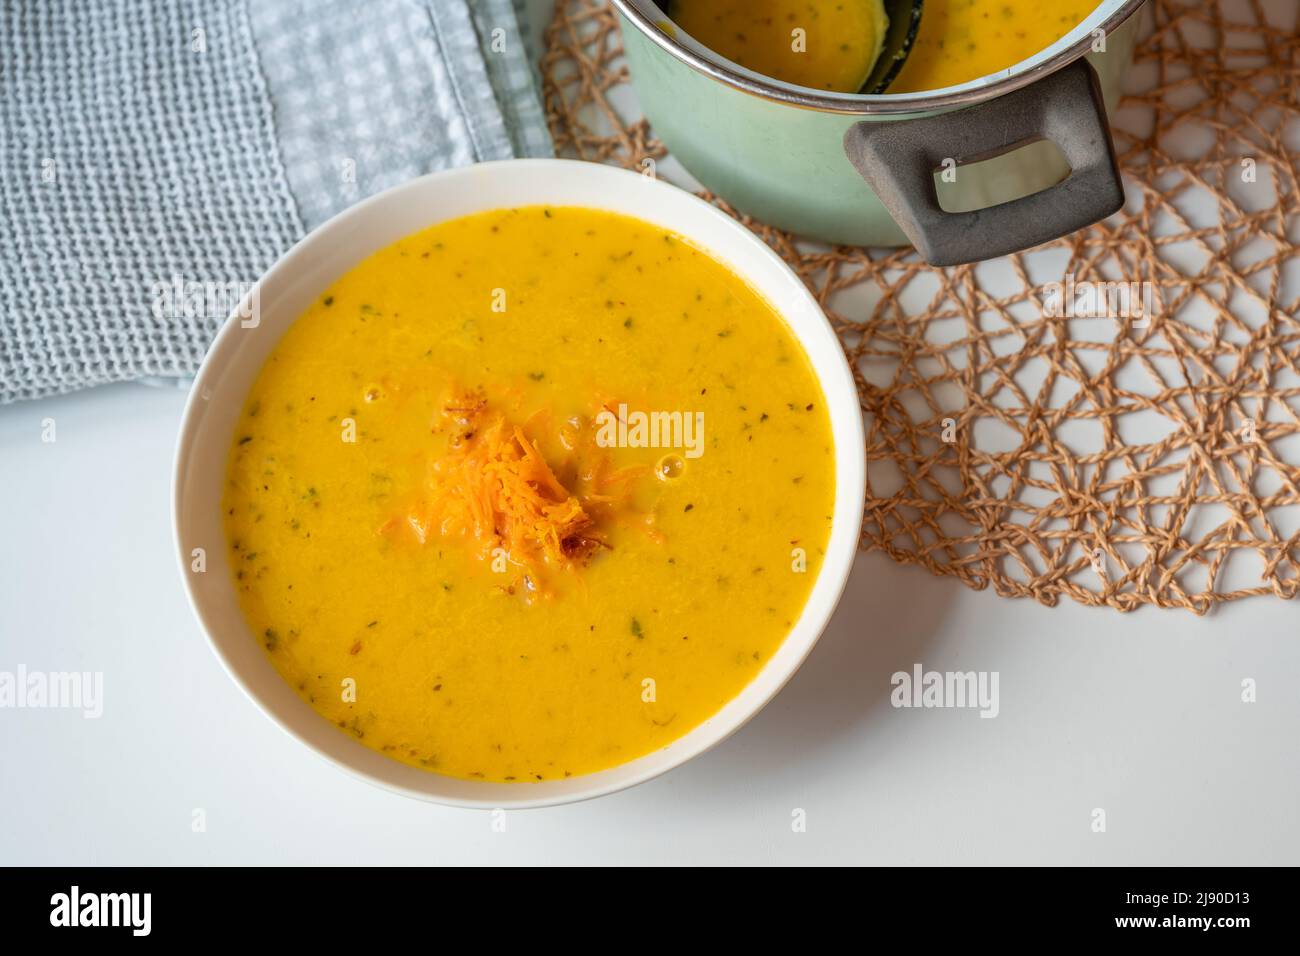 Cremige Karottensuppe auf Teller und in Topf, Handtuch und Bambuskissen auf weißem Tisch. Suppe aus gerösteter Karotte, Gemüsebrühe. Stockfoto